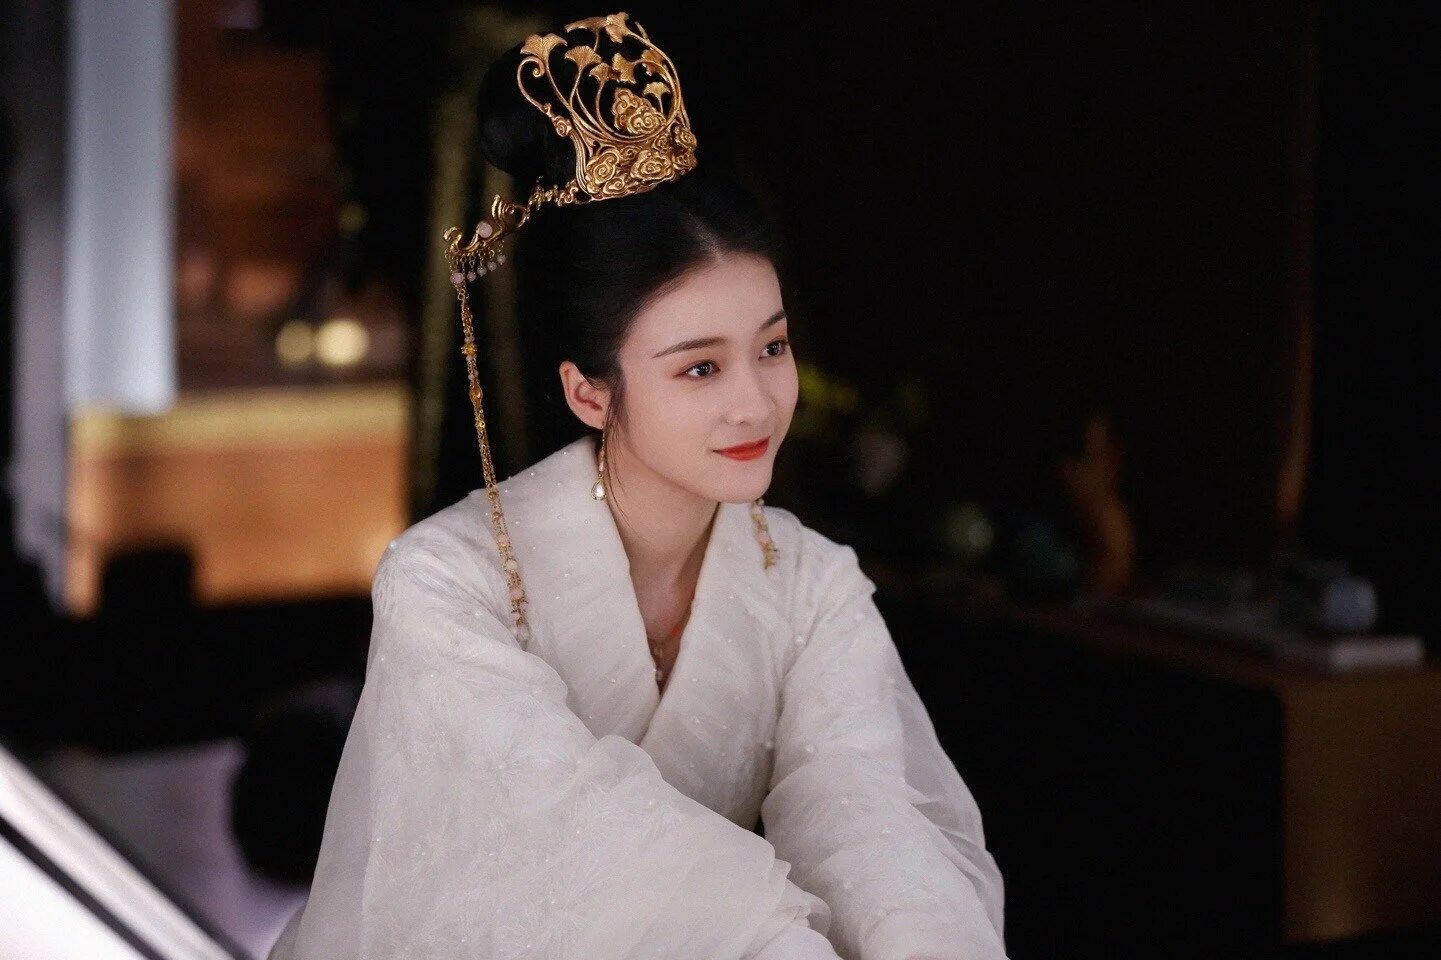 Дорама принцесса уважай себя. Чжан Сюэин принцесса. Чжан Сюэ ин в дораме серебряная принцесса. Серебряная принцесса Чжао Юнь.